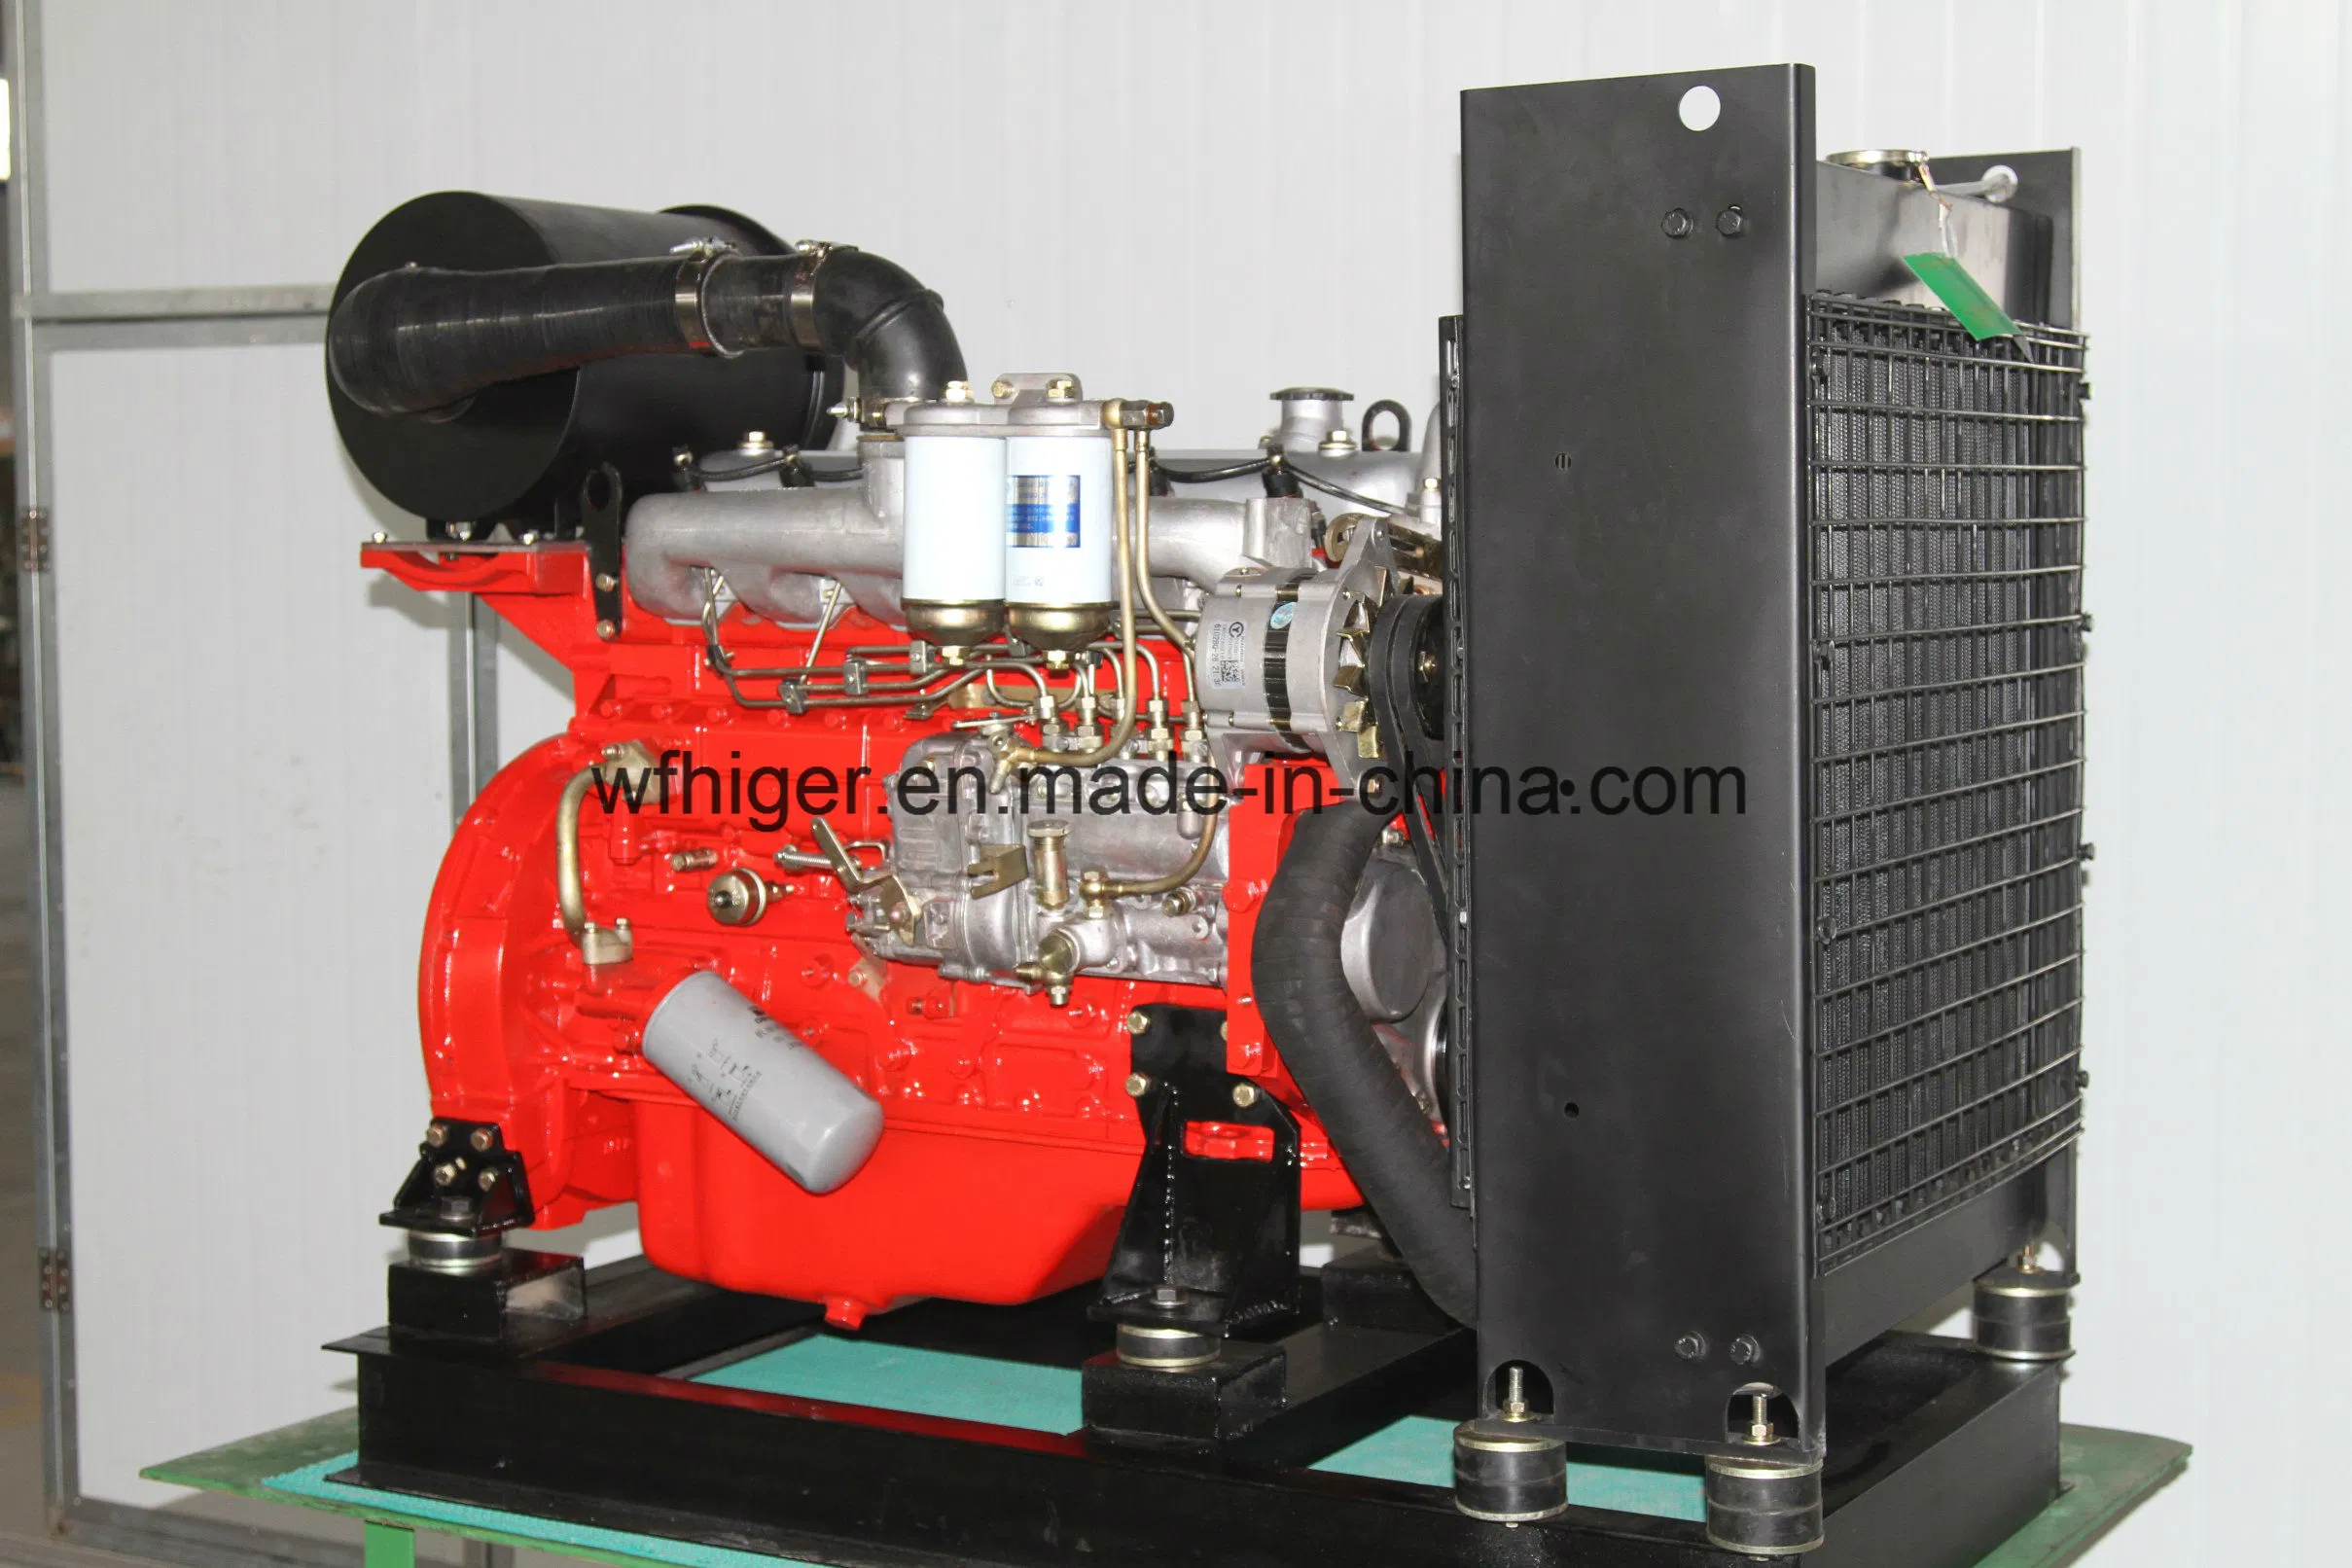 Isuzu технологии дизельного двигателя для генератора/водяной насос и насос 4JA1, 4JB1, 4bd, 6bd, 6tw